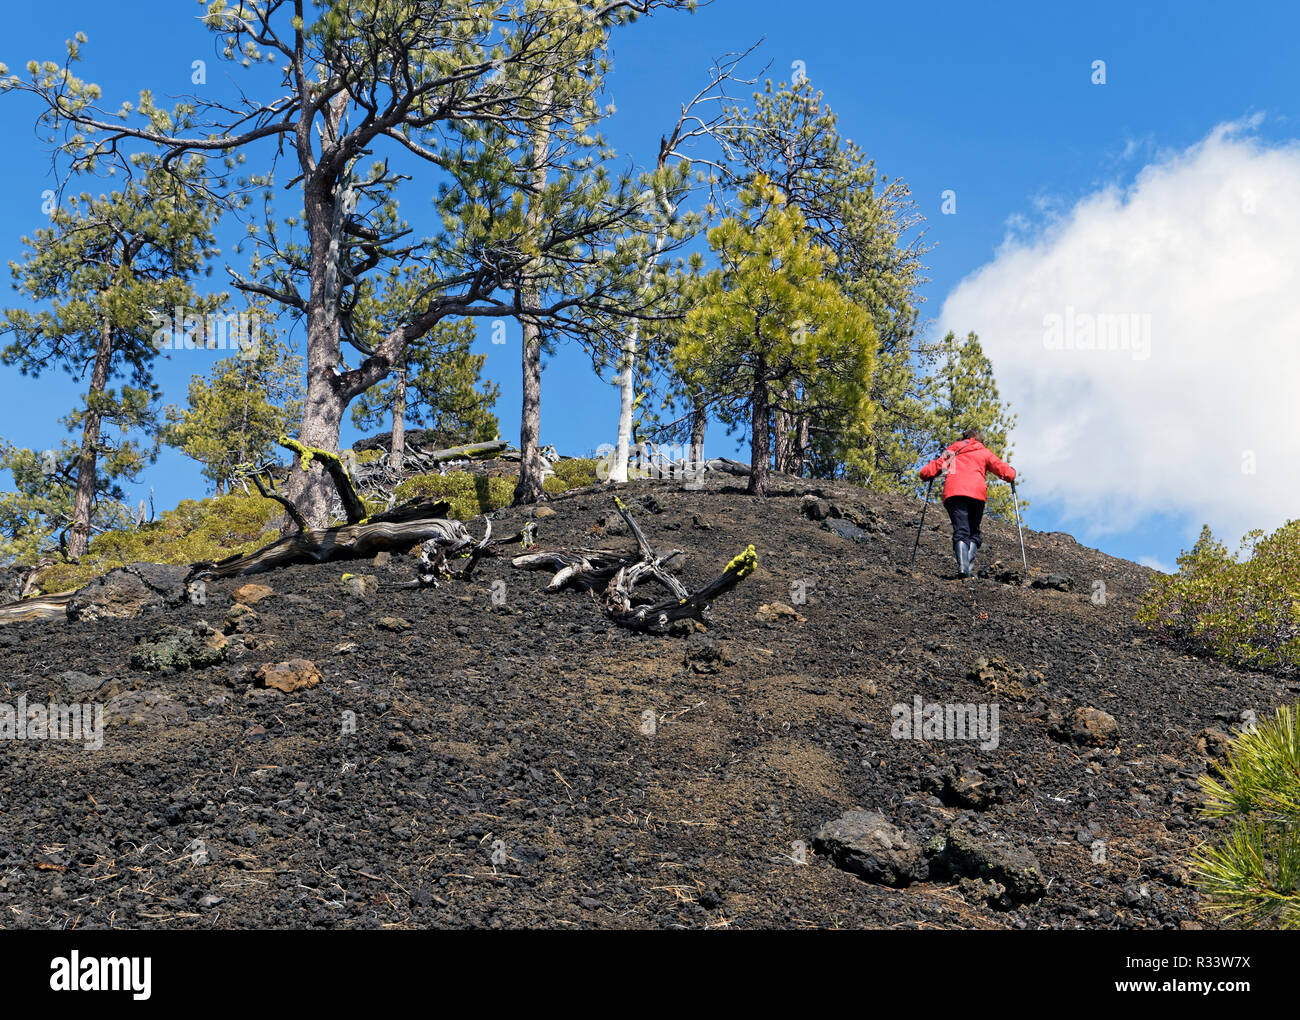 Mujer 42,835.02055 senderismo luchando para subir una empinada ladera de un cono de escoria negra con árboles de pino Ponderosa (Pinus ponderosa), blue sky blancas nubes. Foto de stock